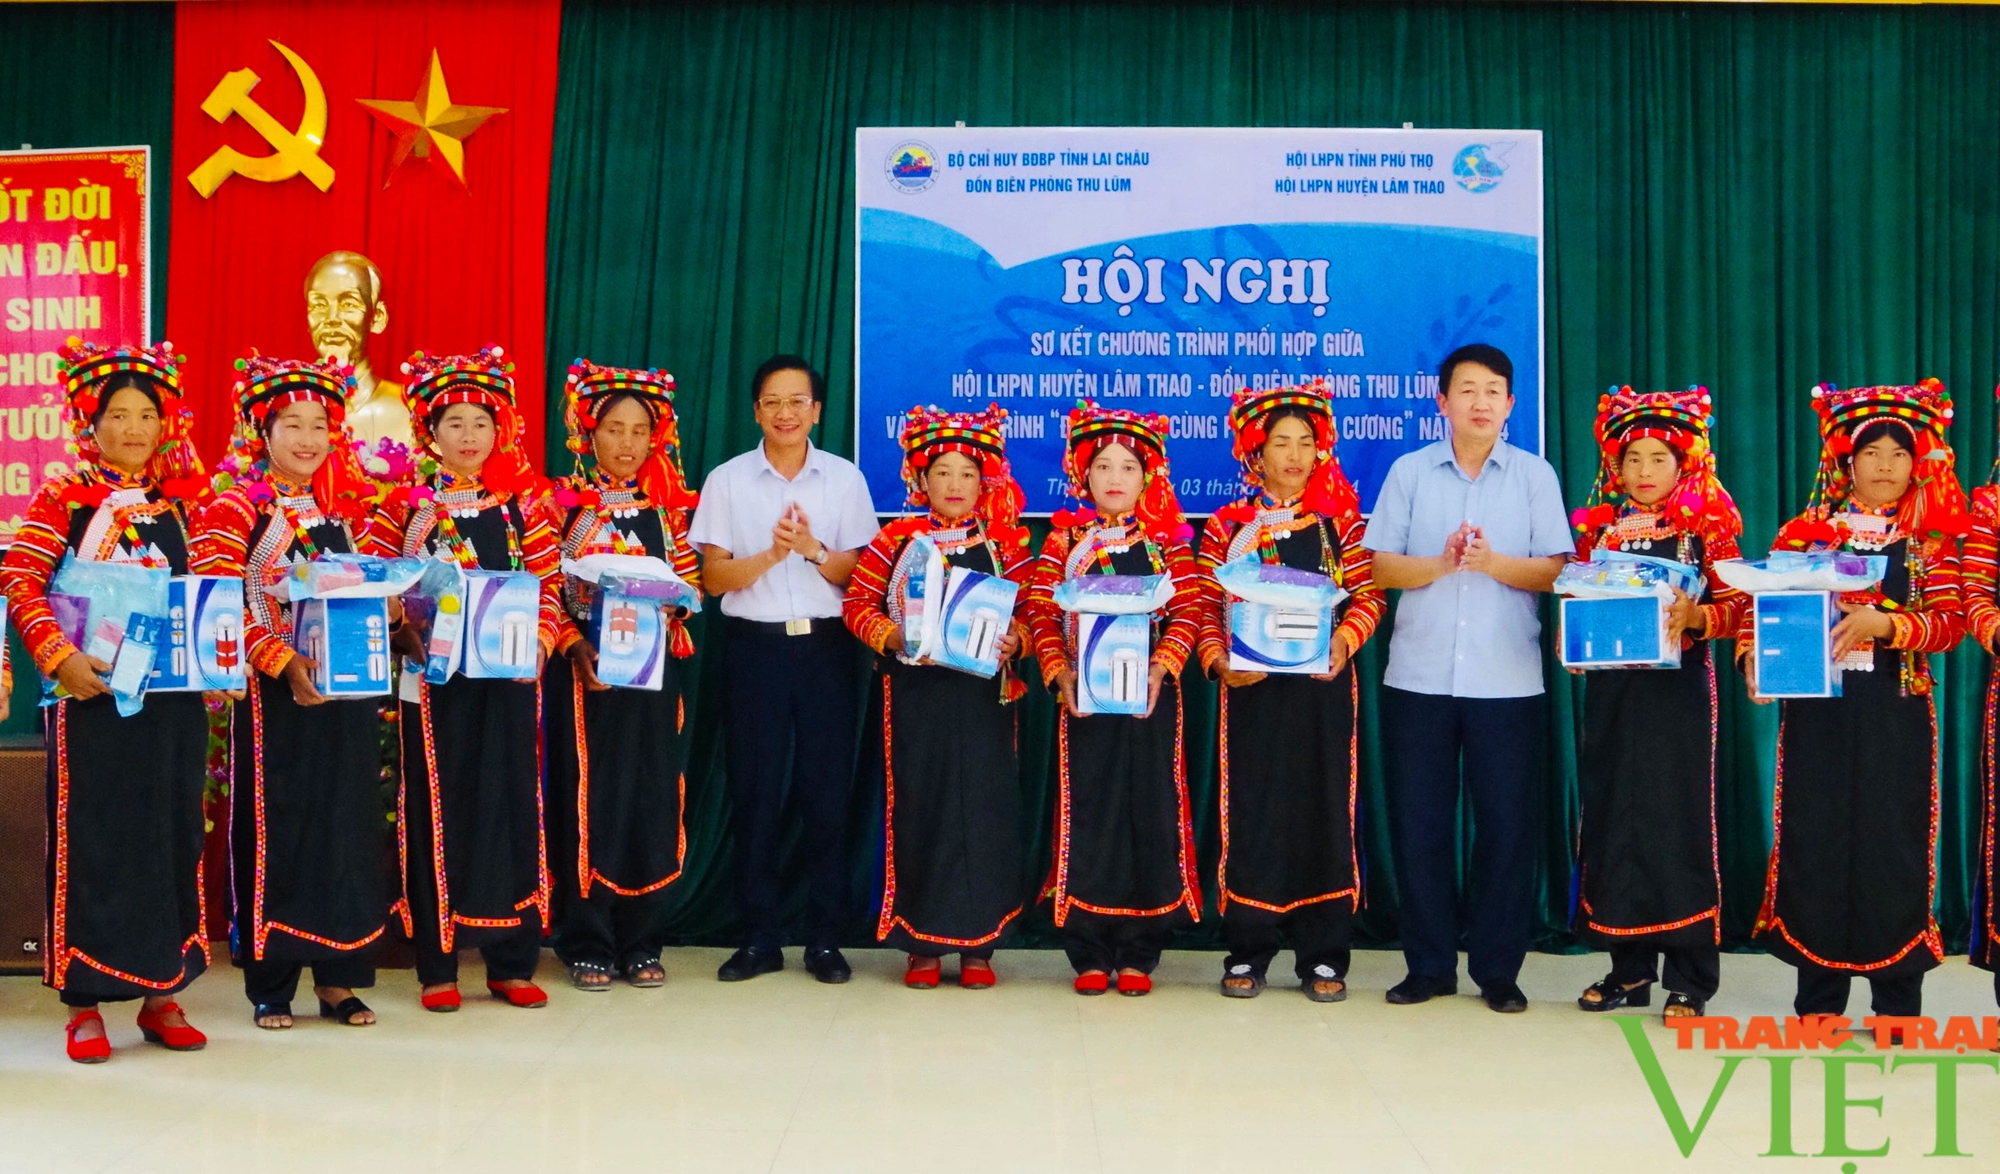 Lai Châu: Sơ kết chương trình phối hợp giữa Đồn Biên phòng Thu Lũm và Hội LHPN huyện Lâm Thao, Phú Thọ- Ảnh 3.